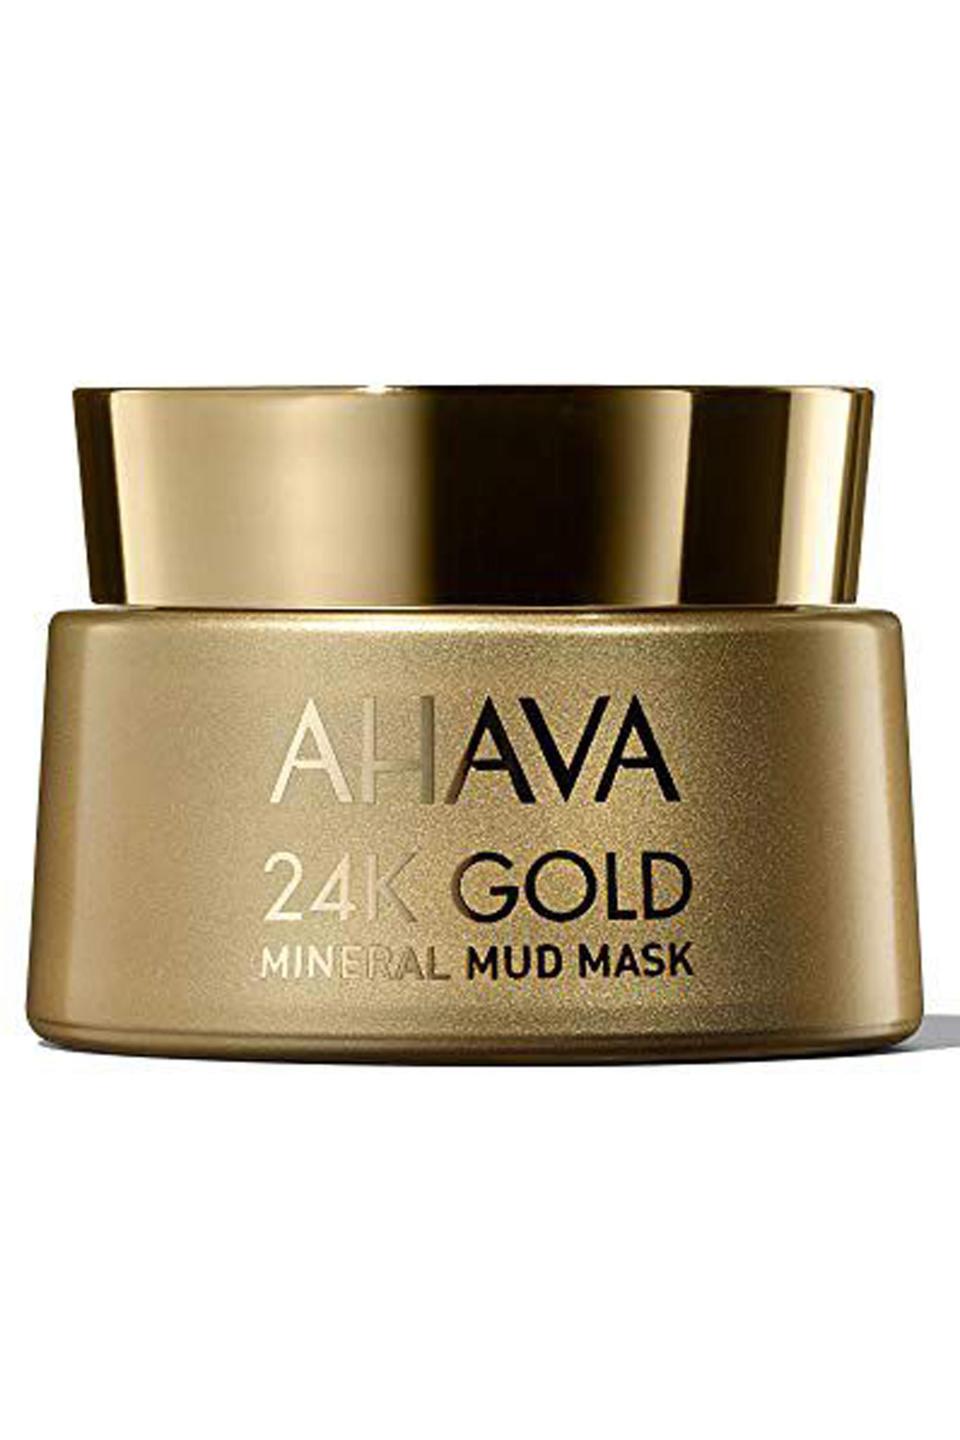 28) 24k Gold Mineral Mud Mask